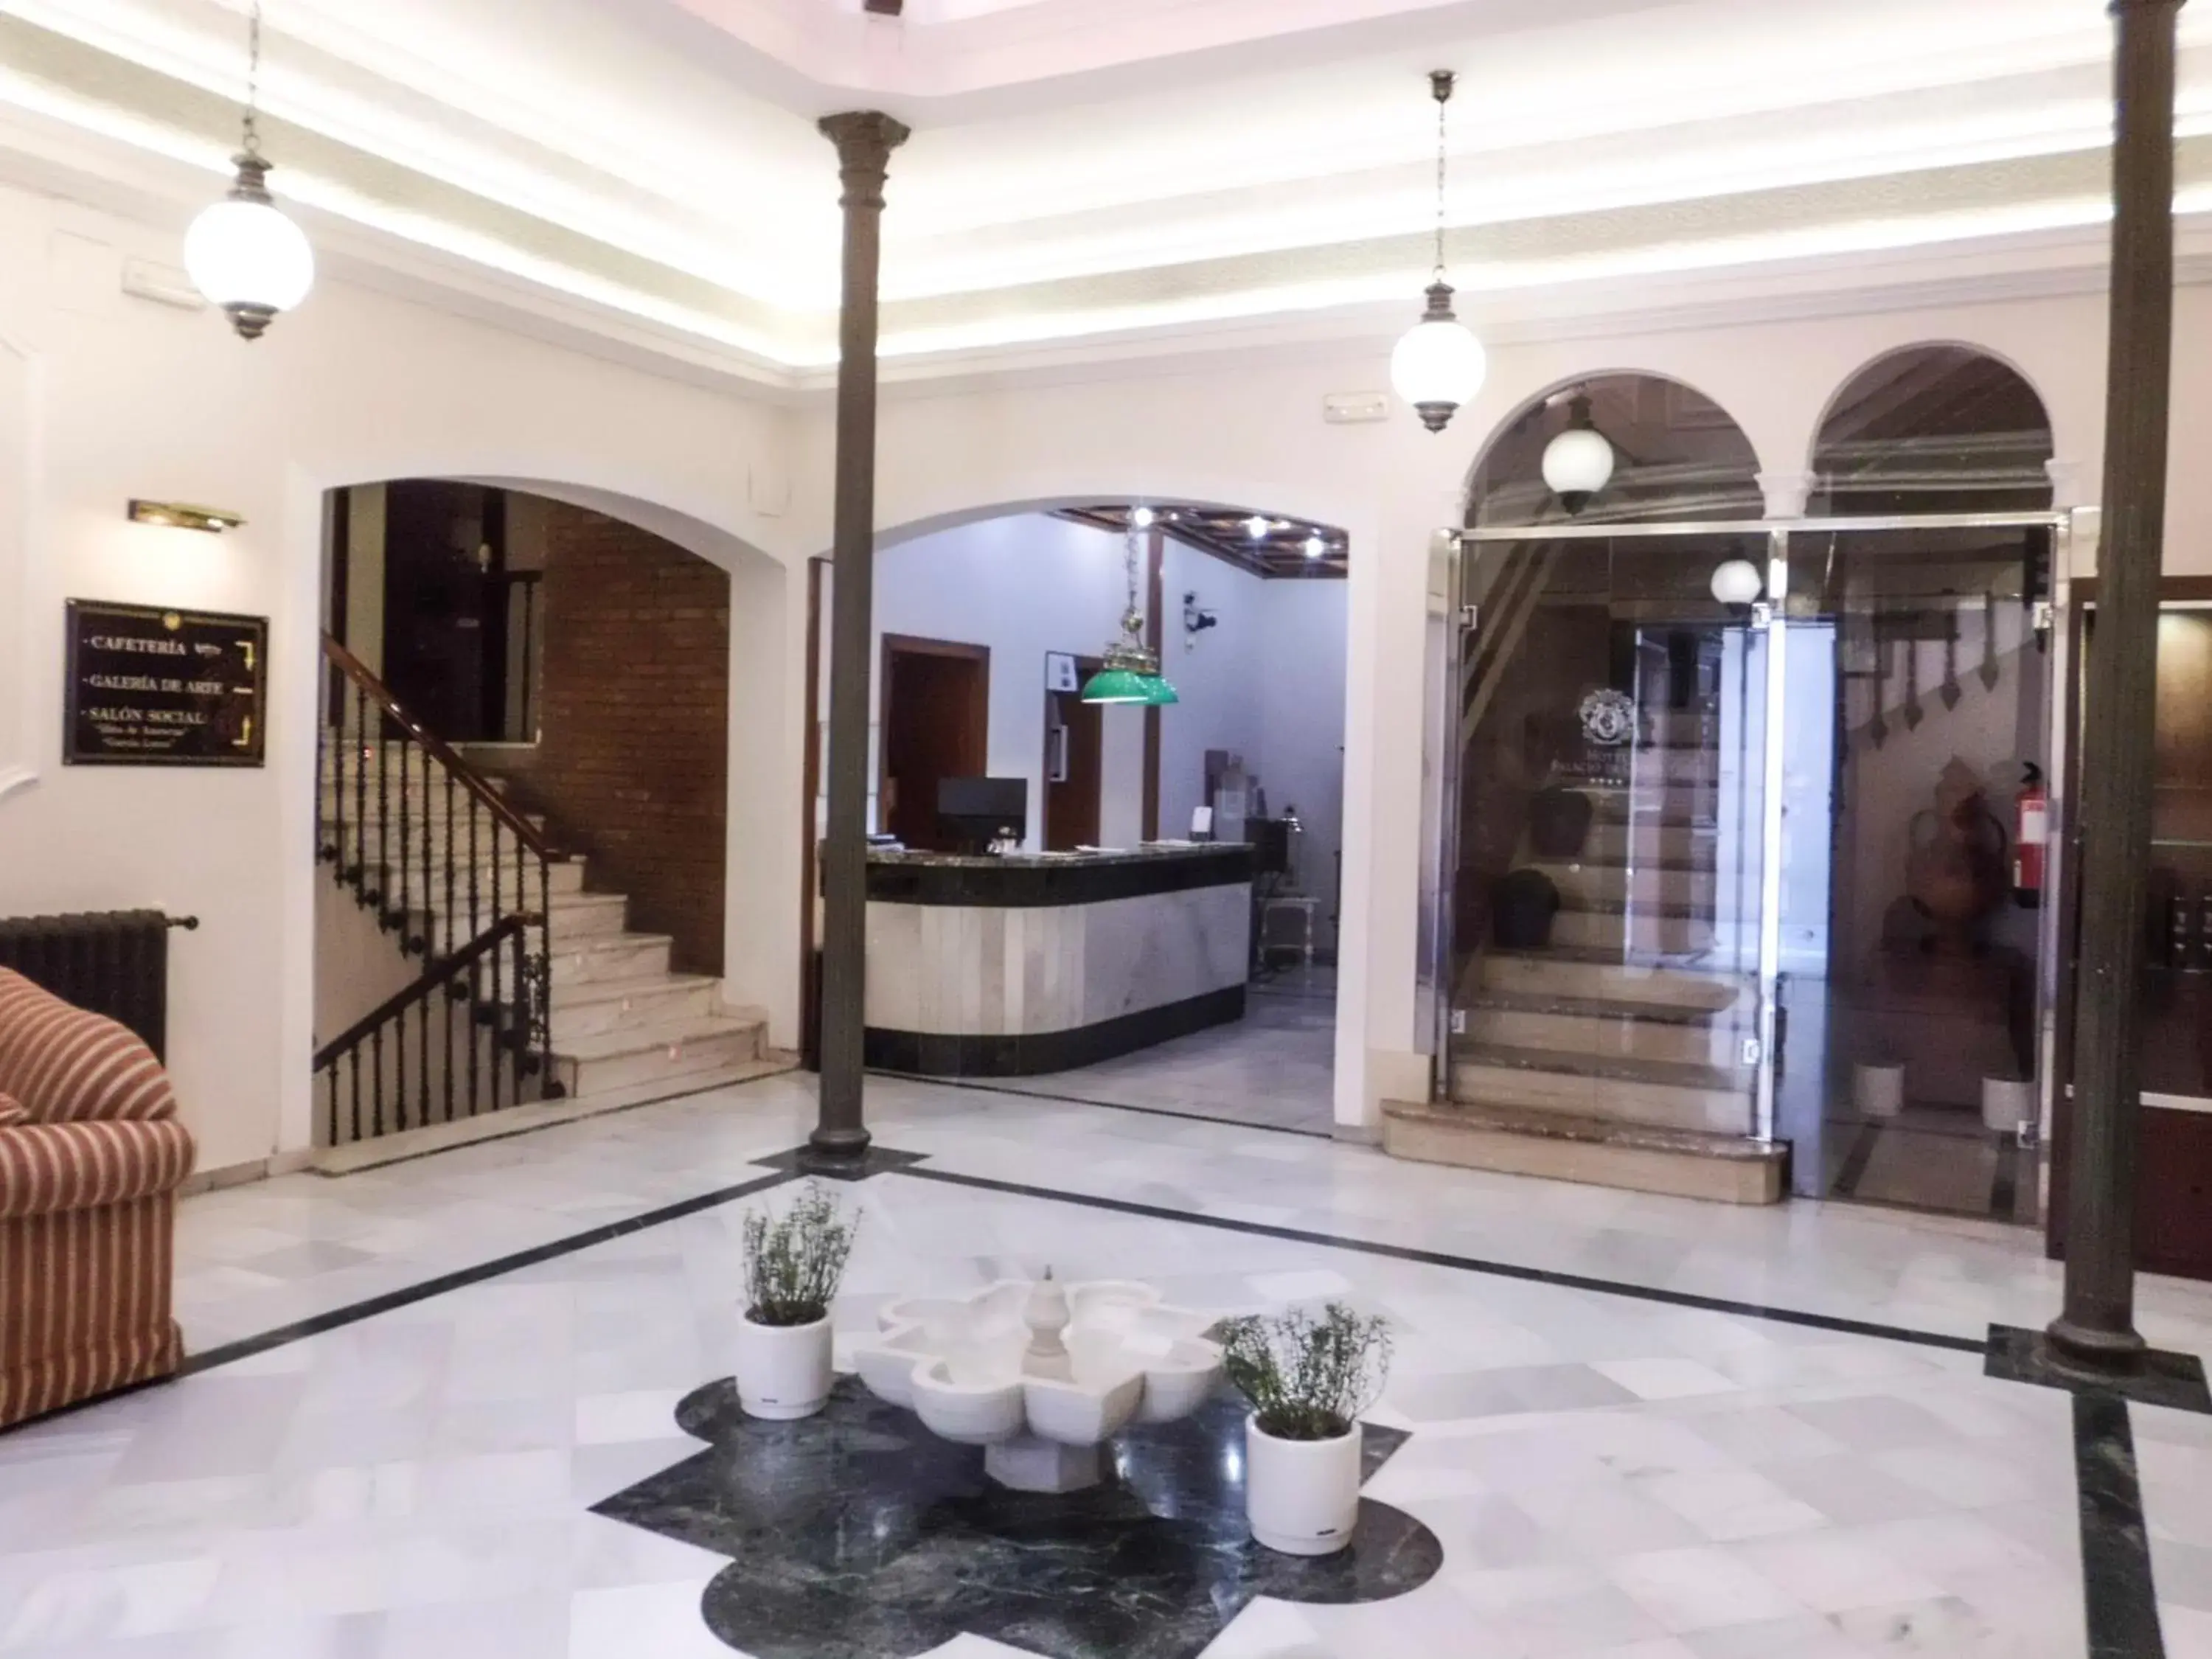 Lobby or reception in Hotel Palacio de Oñate